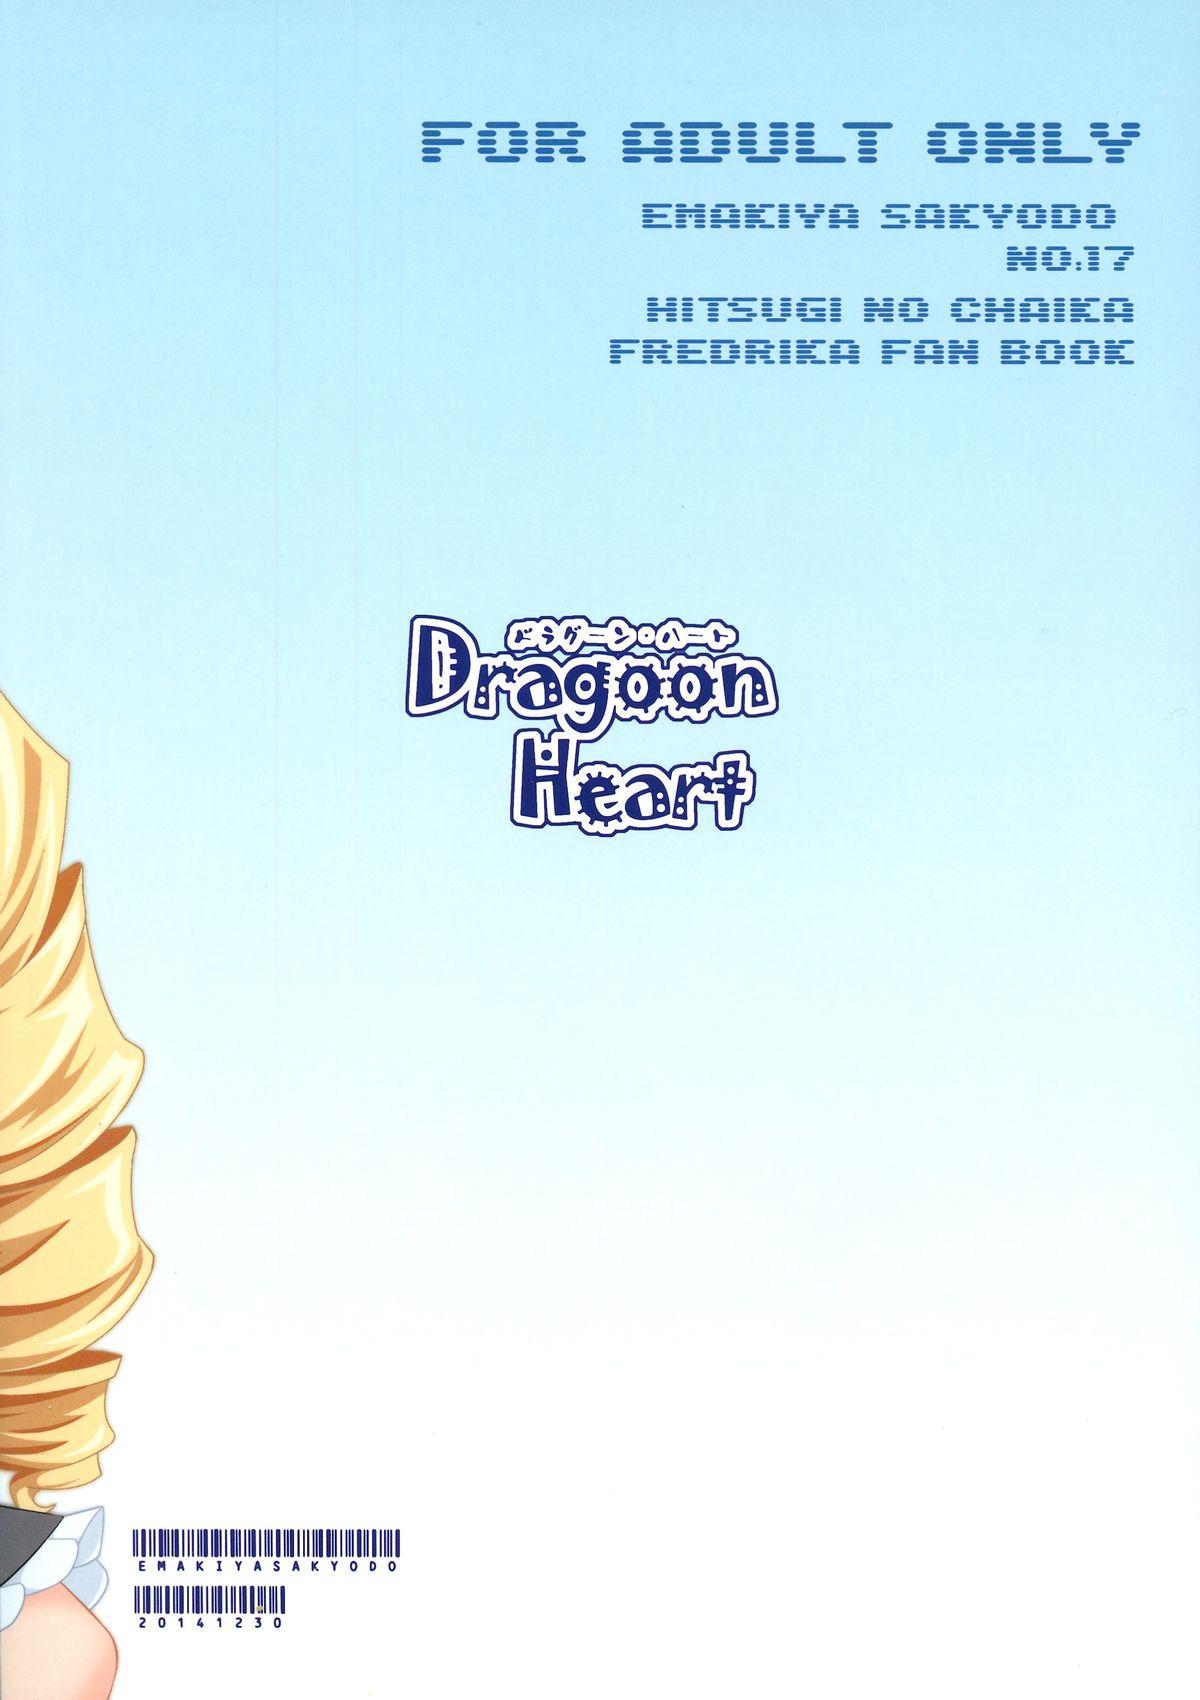 Exgirlfriend Dragoon Heart - Hitsugi no chaika Massage - Page 2